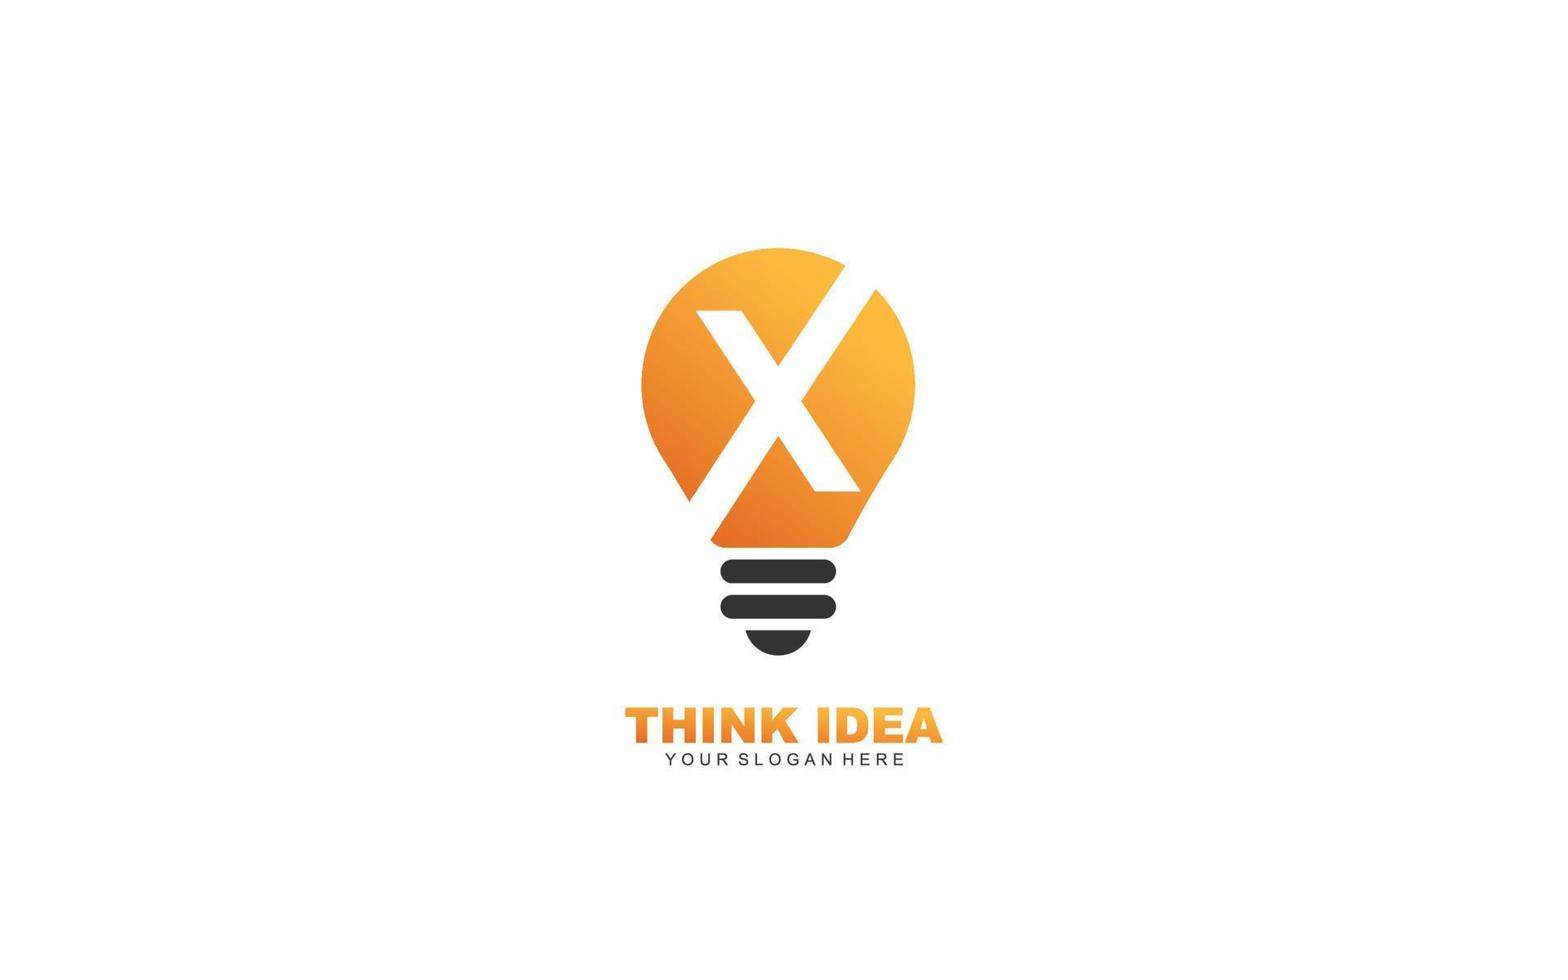 X SMART logo design inspiration. Vector letter template design for brand.